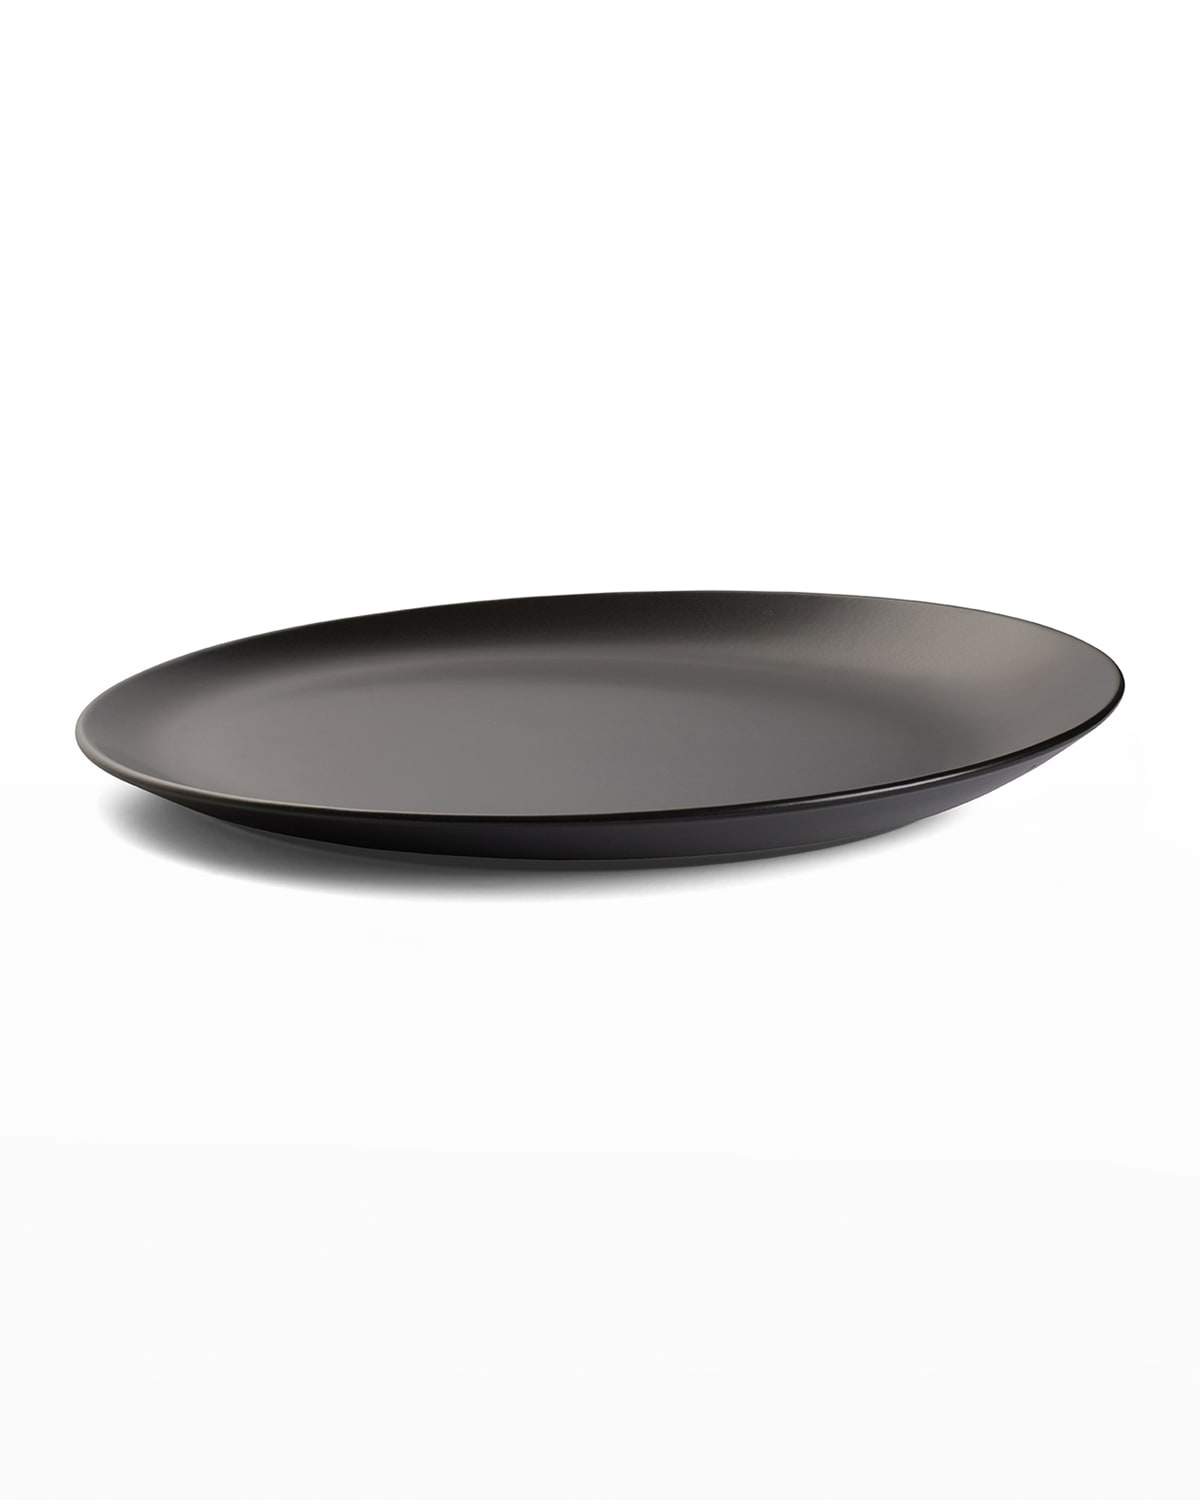 Shop Nambe Platter, Celestial Black